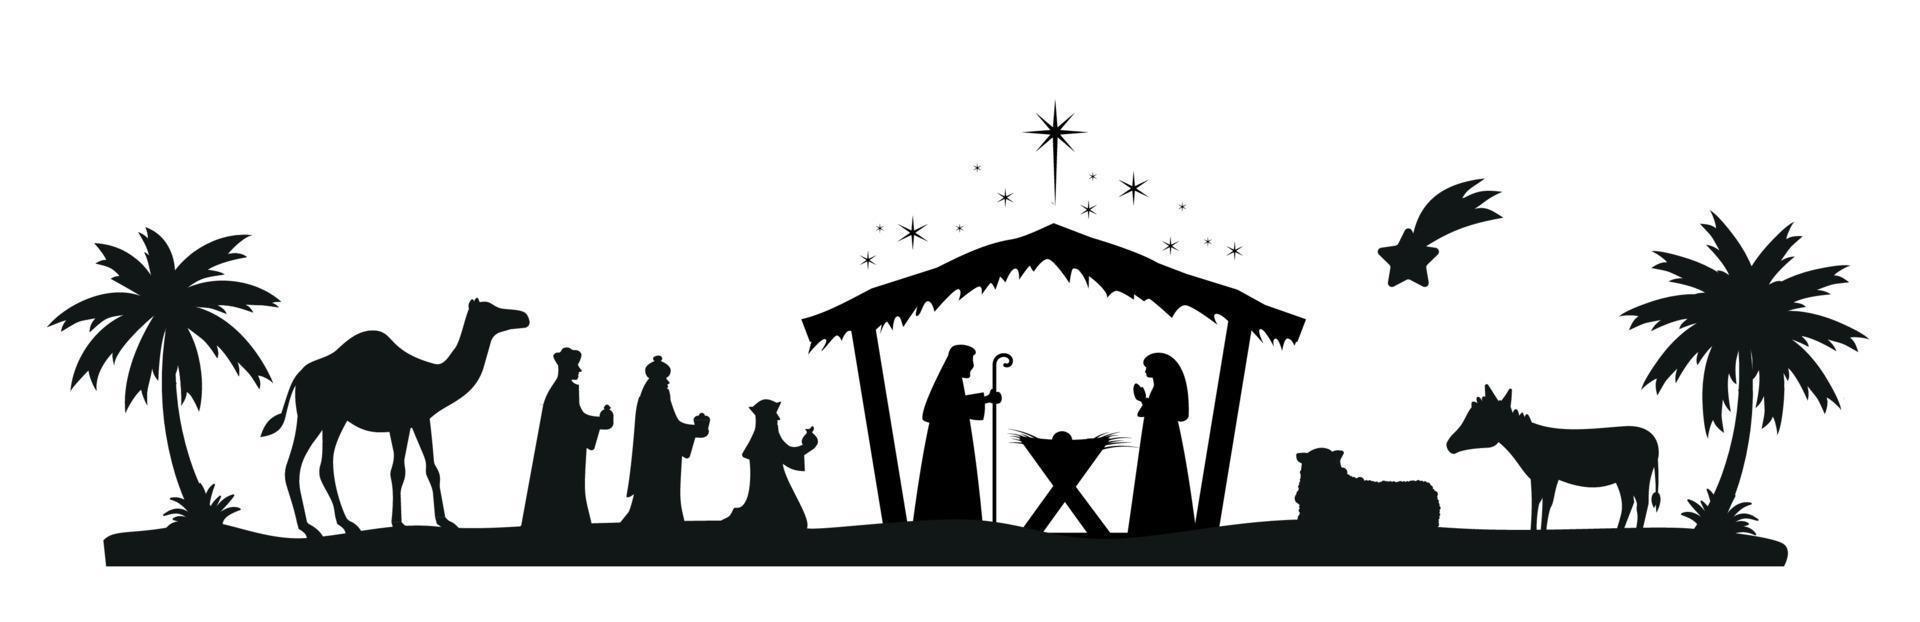 Kerstmis geboorte tafereel met baby Jezus, Maria en Joseph in de kribbe.traditioneel christen Kerstmis verhaal. vector illustratie voor kinderen. eps 10